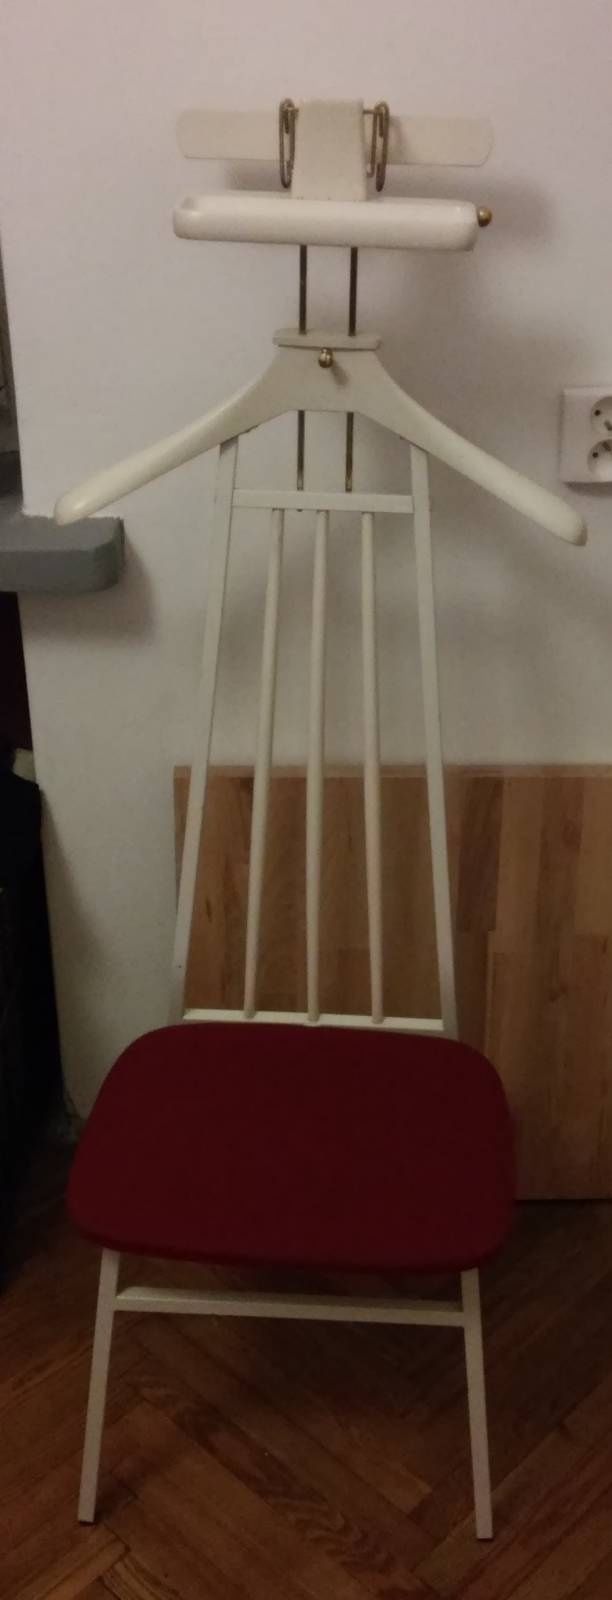 Krzesło stojak na ubrania